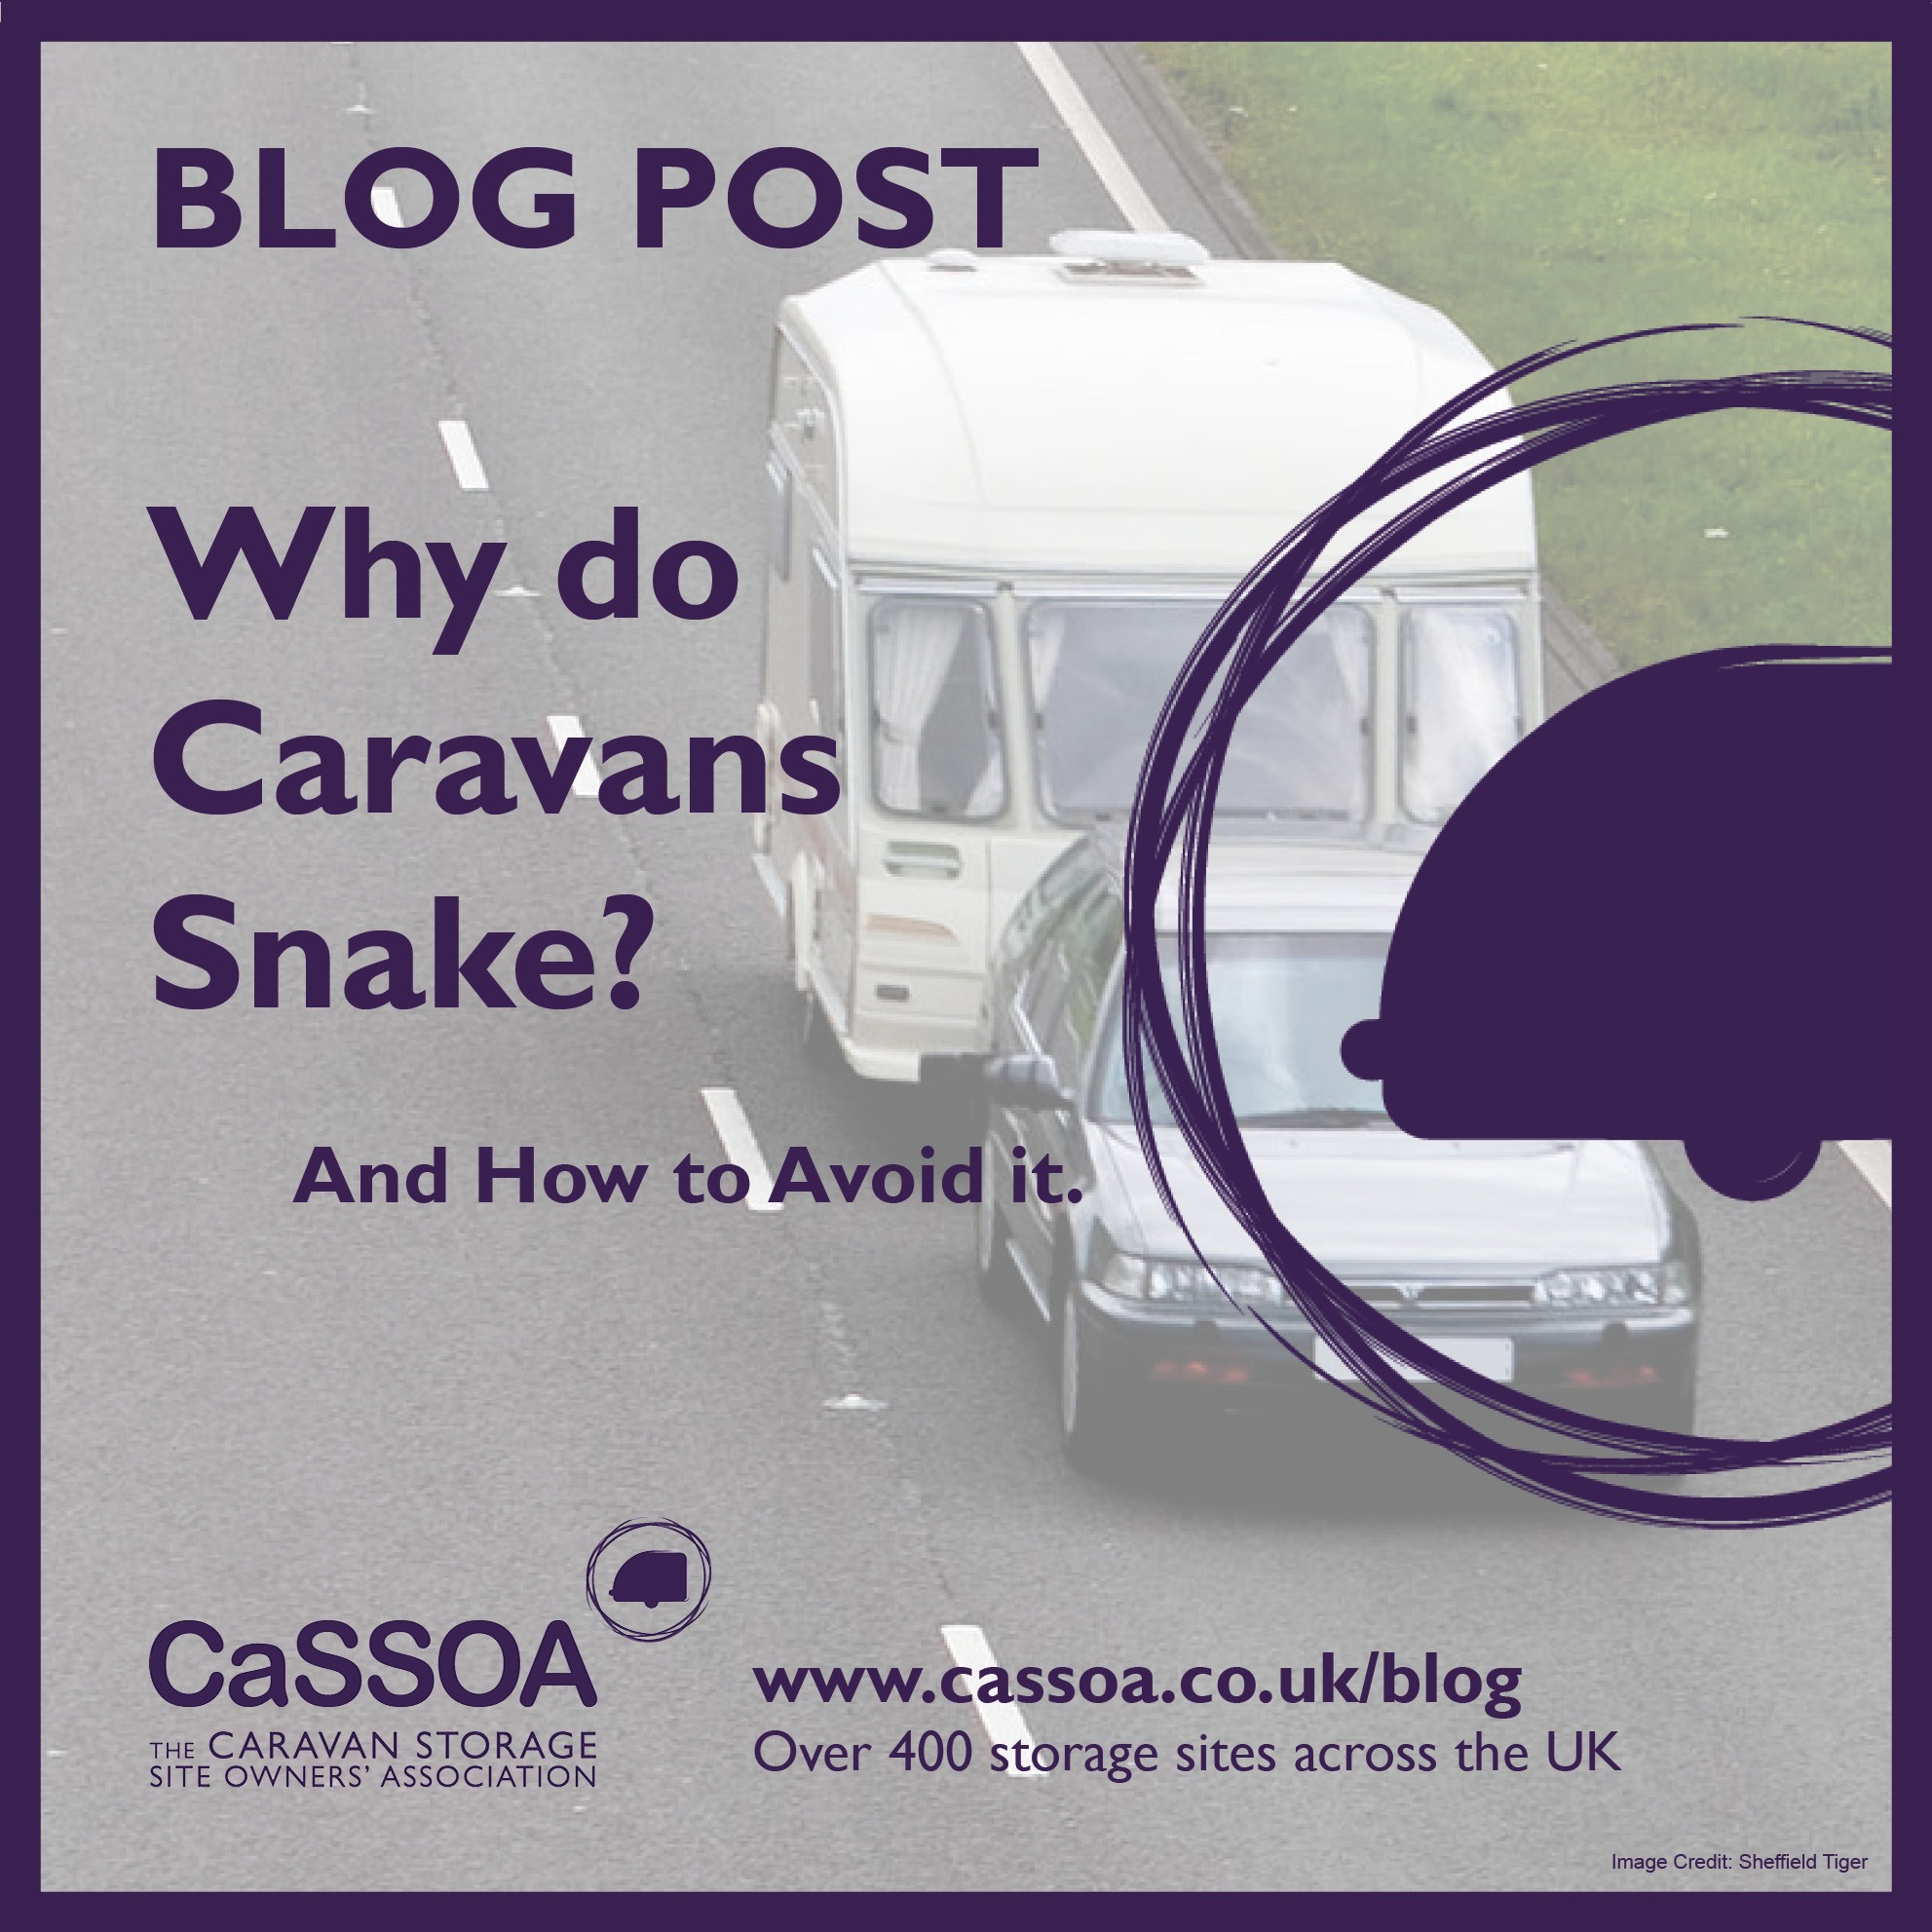 Why do Caravans Snake